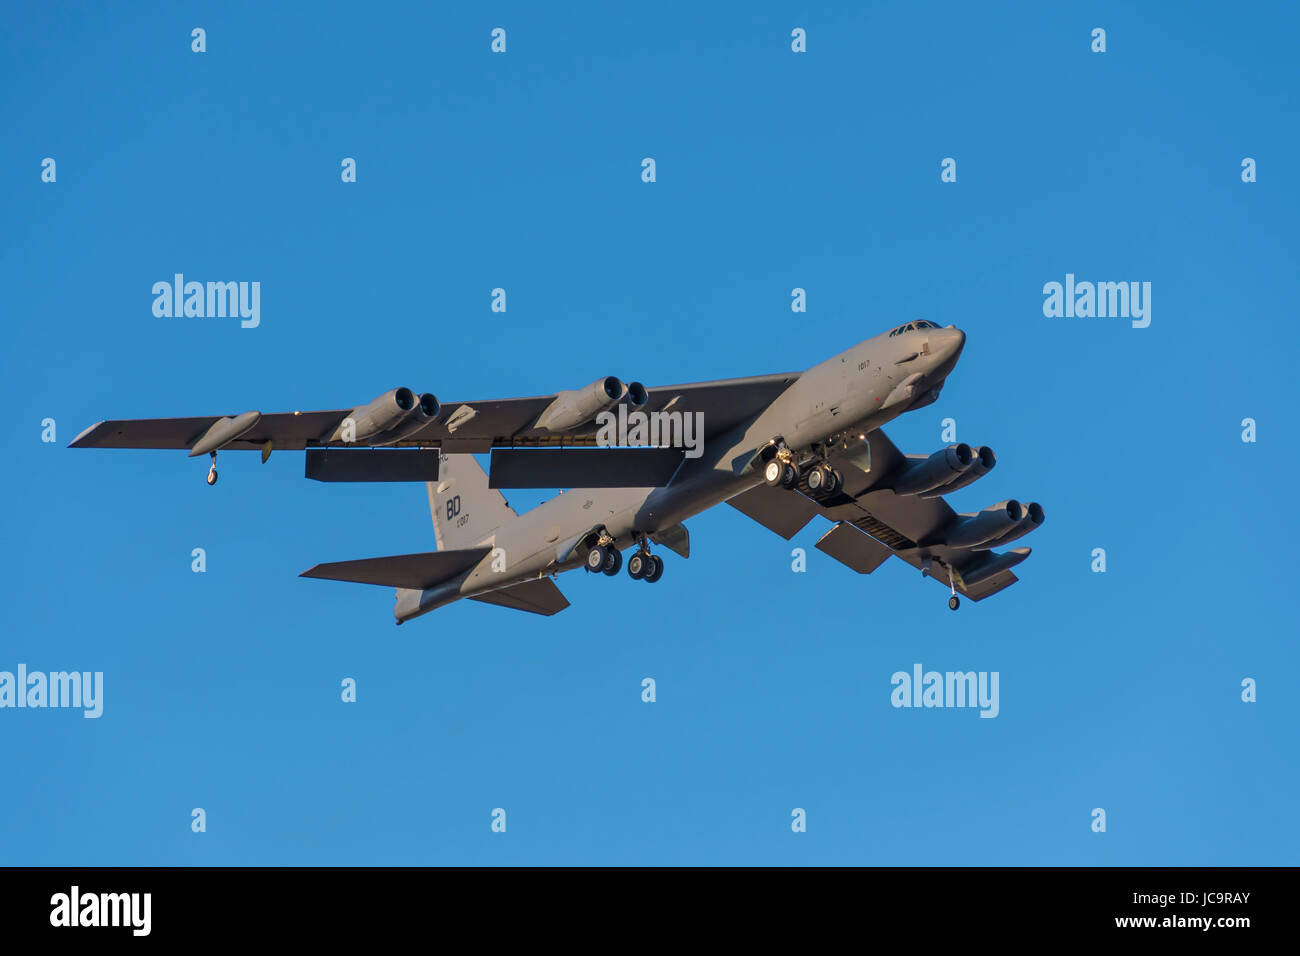 BOSSIER City, Louisiana, EE.UU., 24 de enero de 2017: la Fuerza Aérea de los EE.UU bombardero B 52, asignado a la Fuerza Aérea Global Strike Command la Octava Fuerza Aérea. Foto de stock